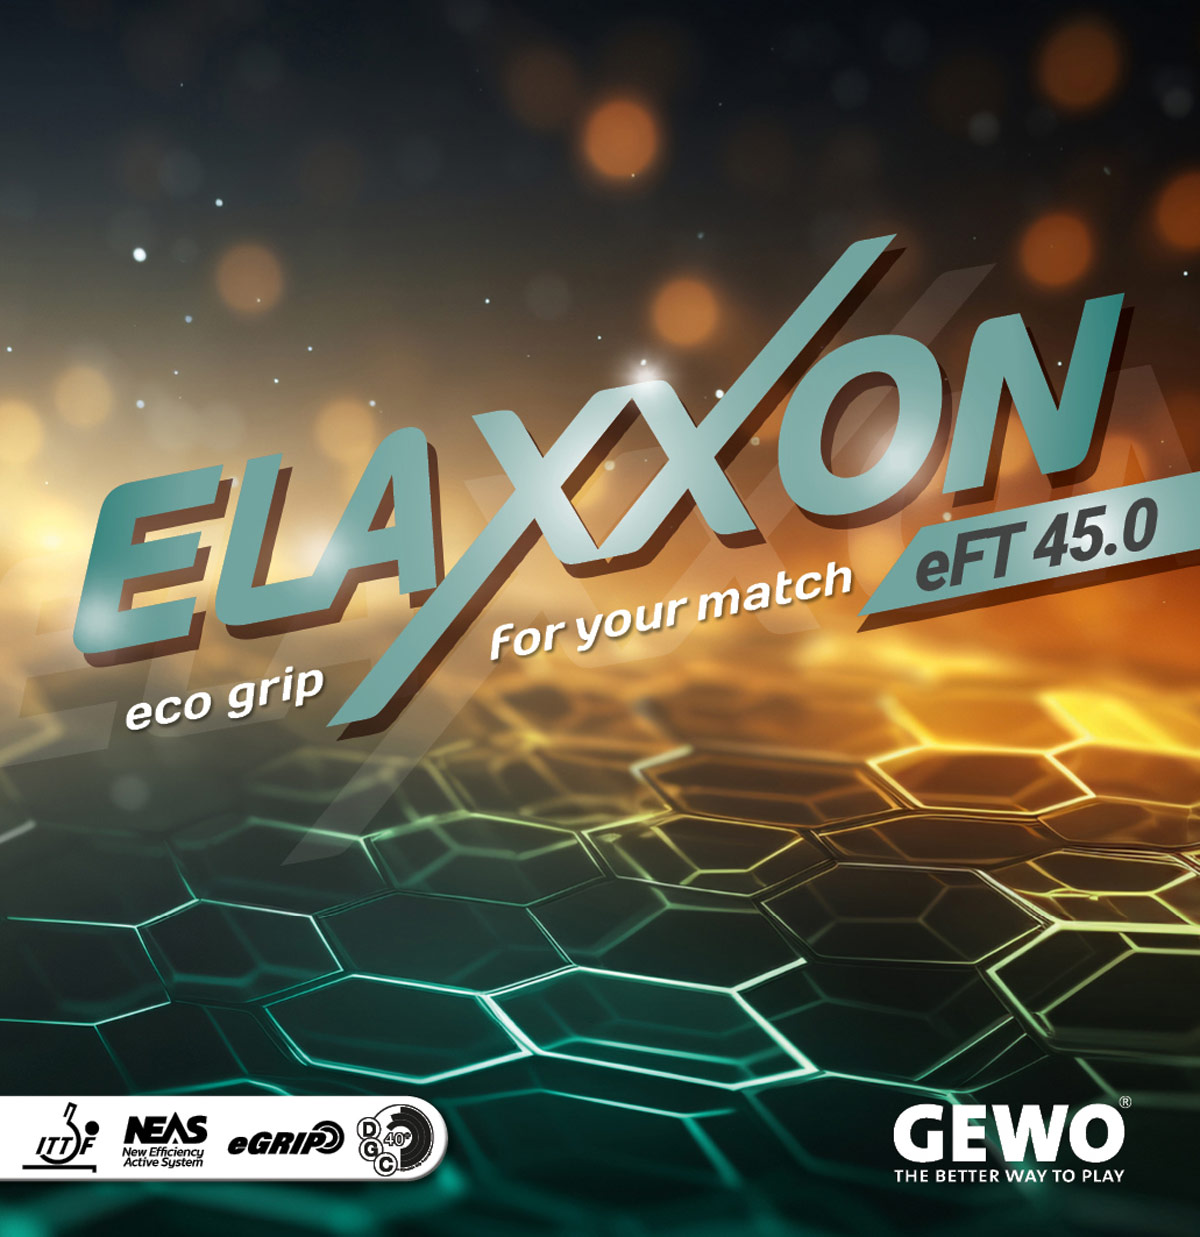 GEWO Rubber Elaxxon eFT 45.0